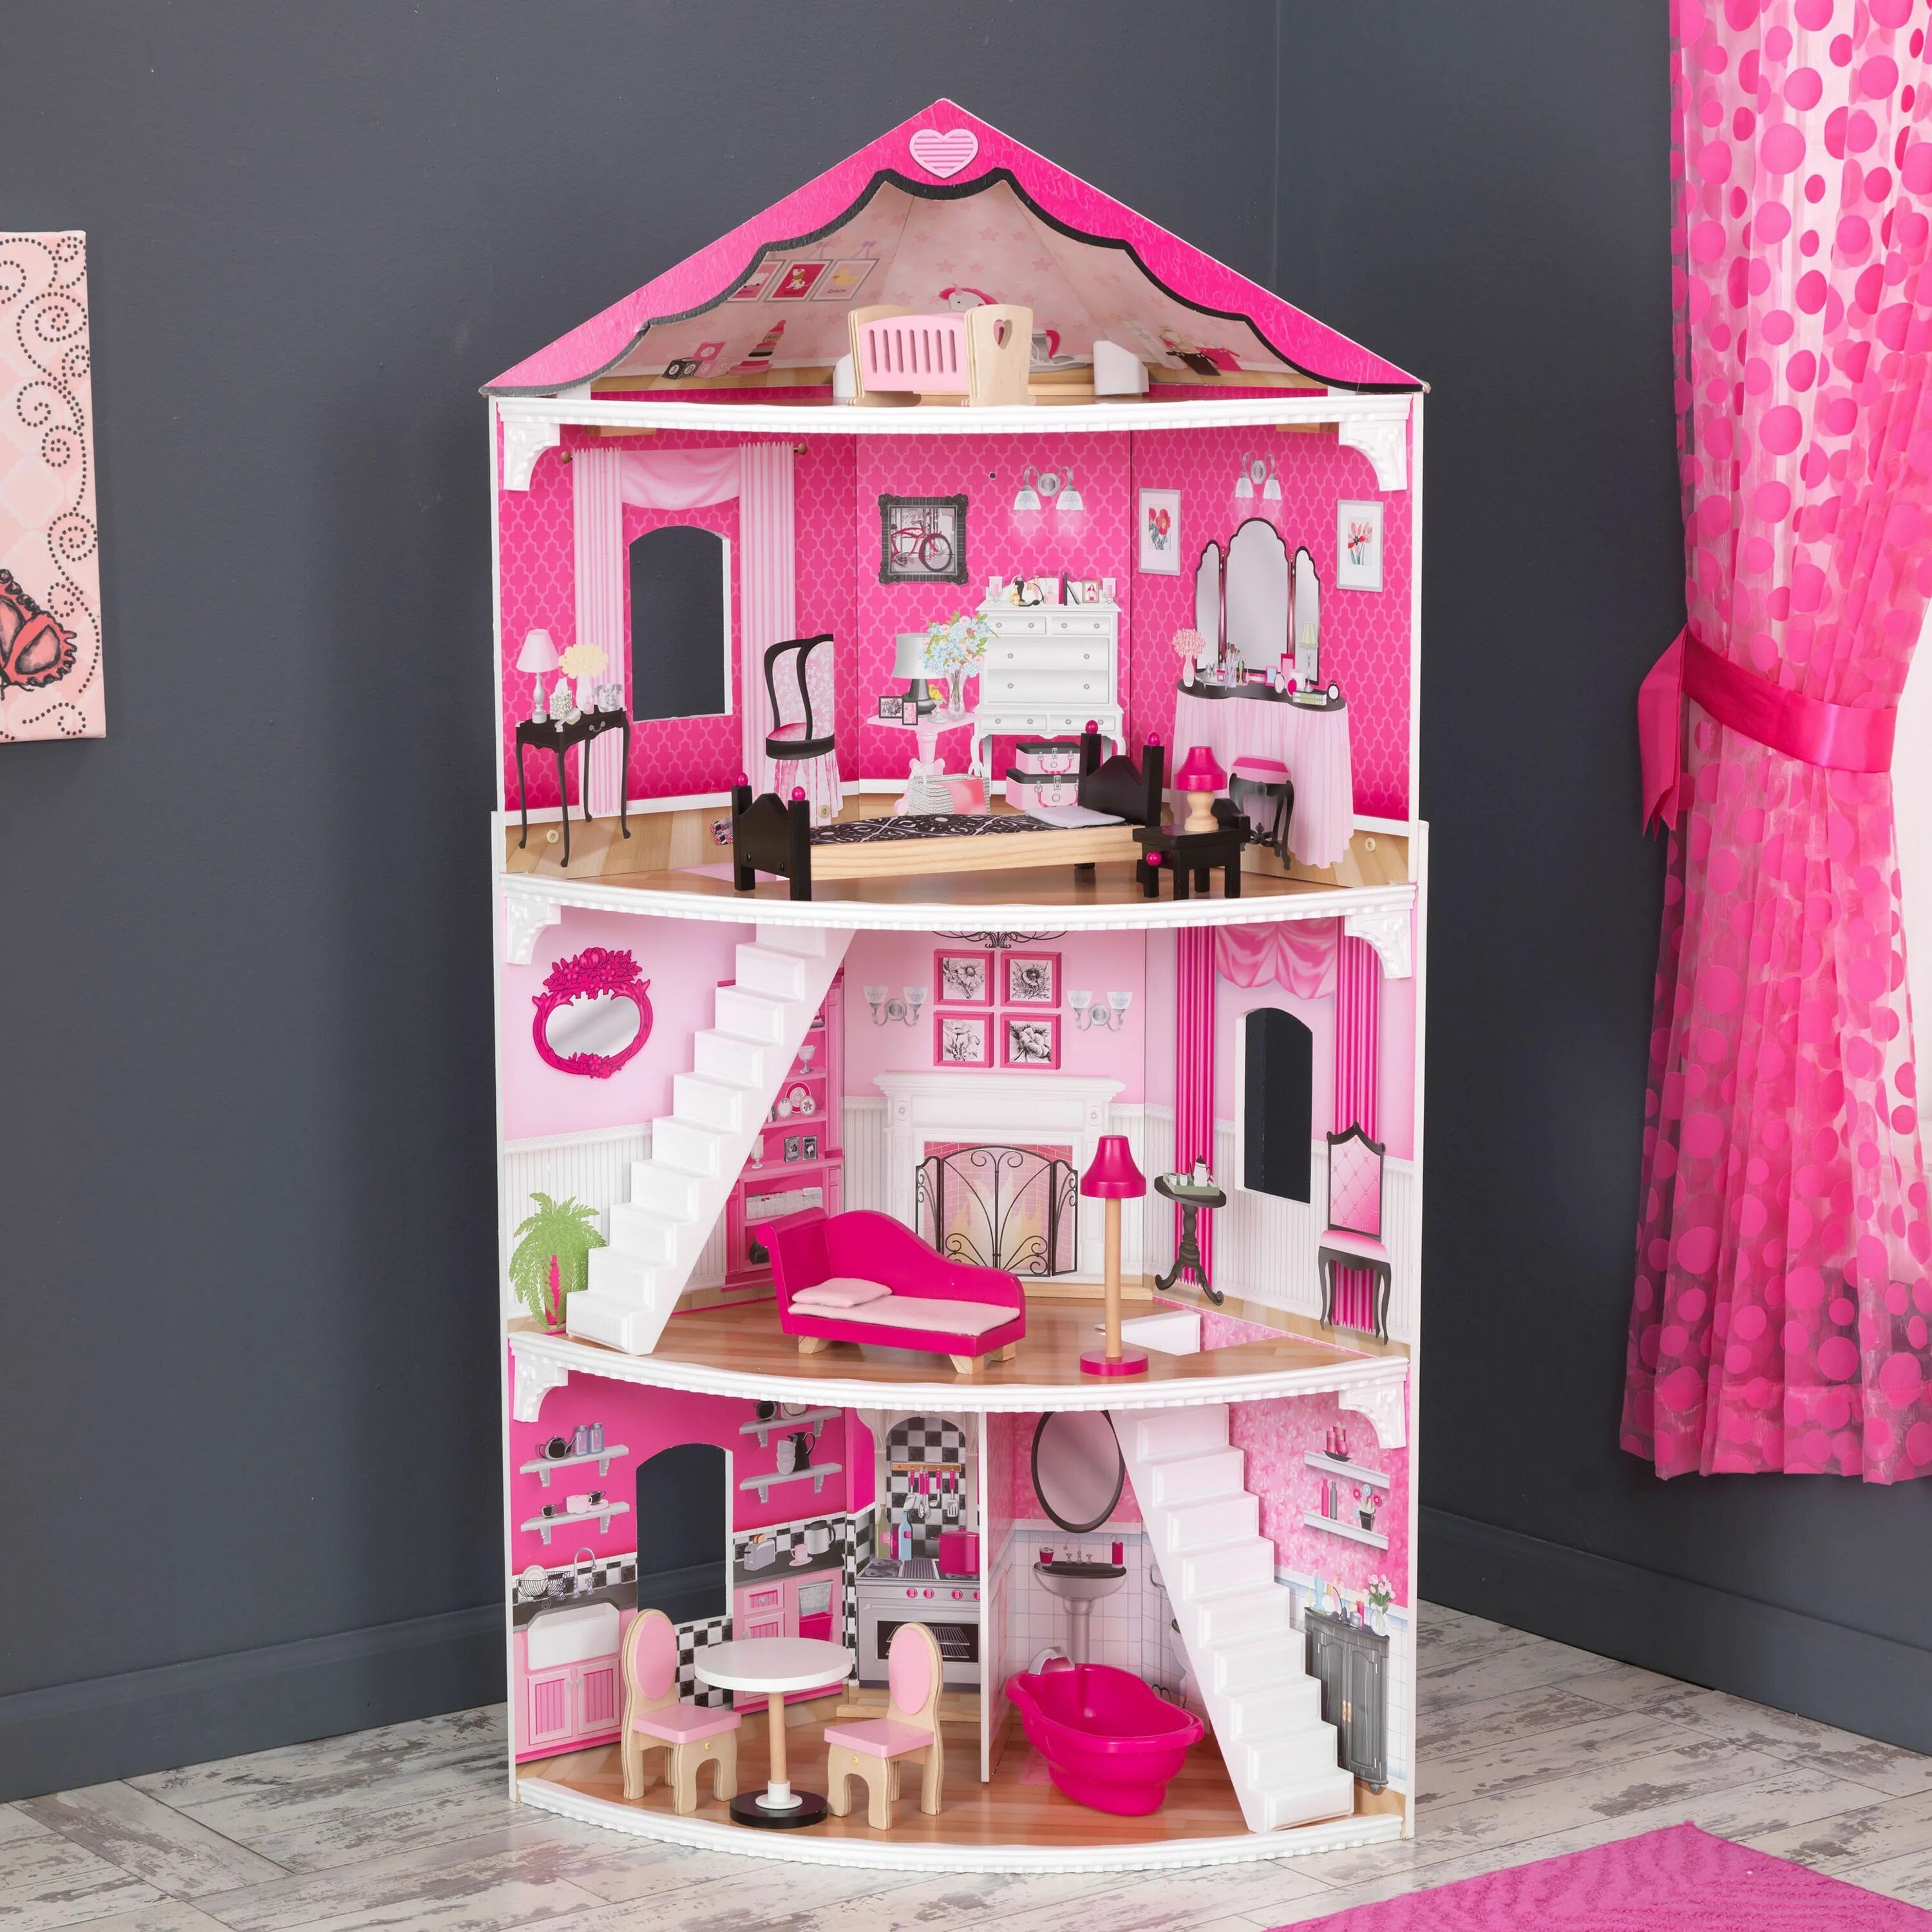 Кукольный домик pretty Dollhouse. Домик для Барби розовый Dollhouse. Doll House домик для кукол pretty Dollhouse.